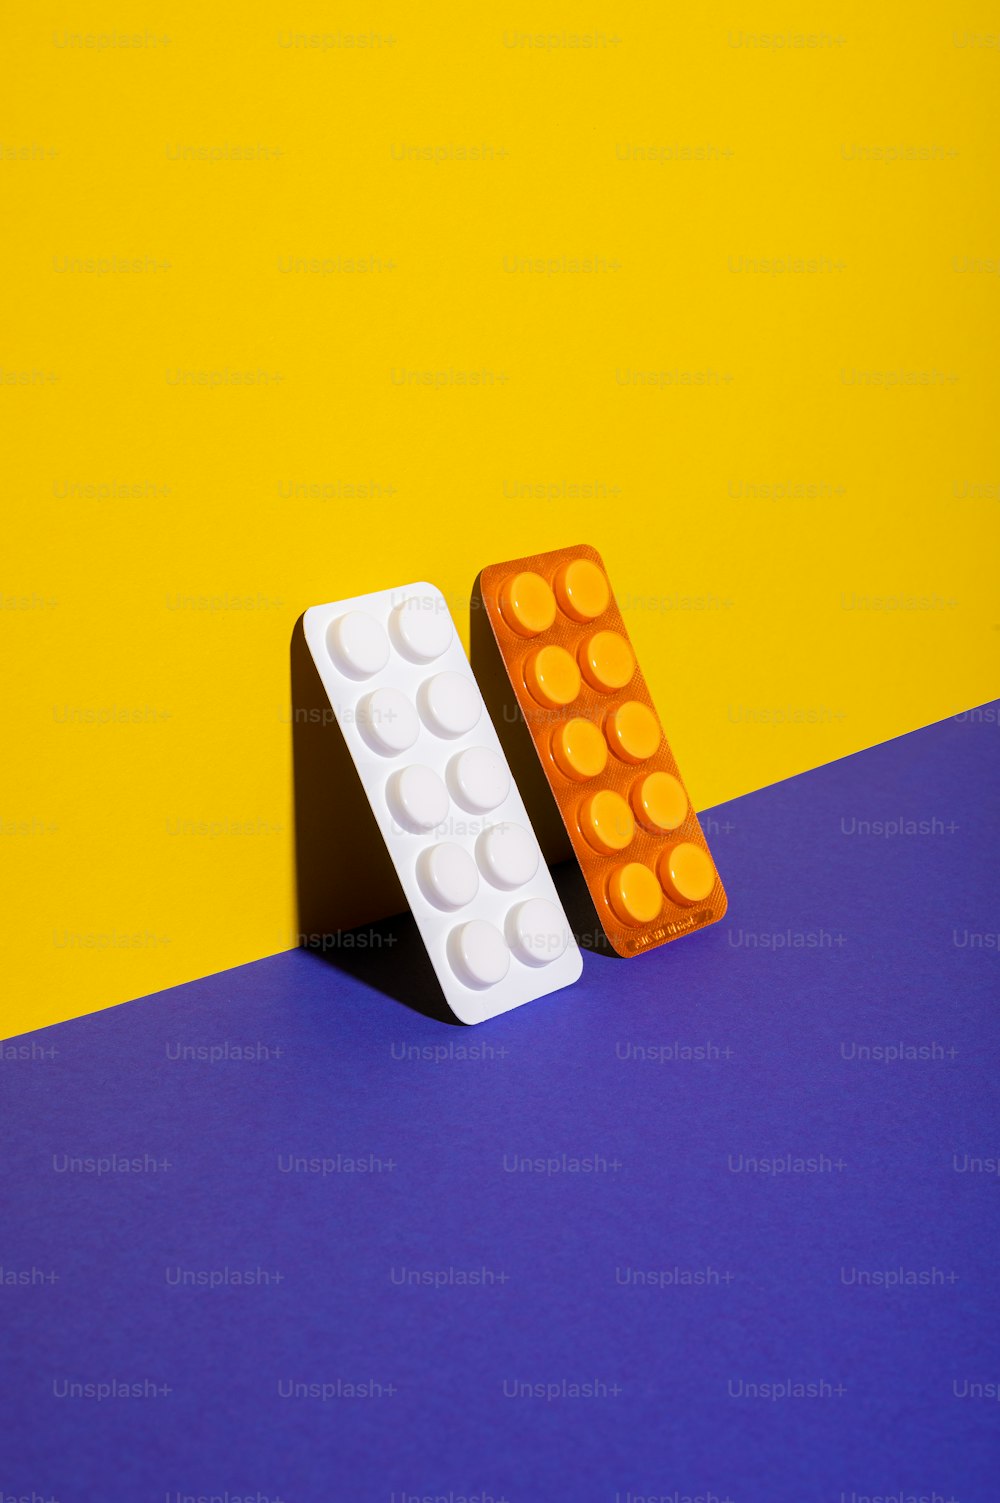 Un par de bloques de Lego sobre una superficie azul